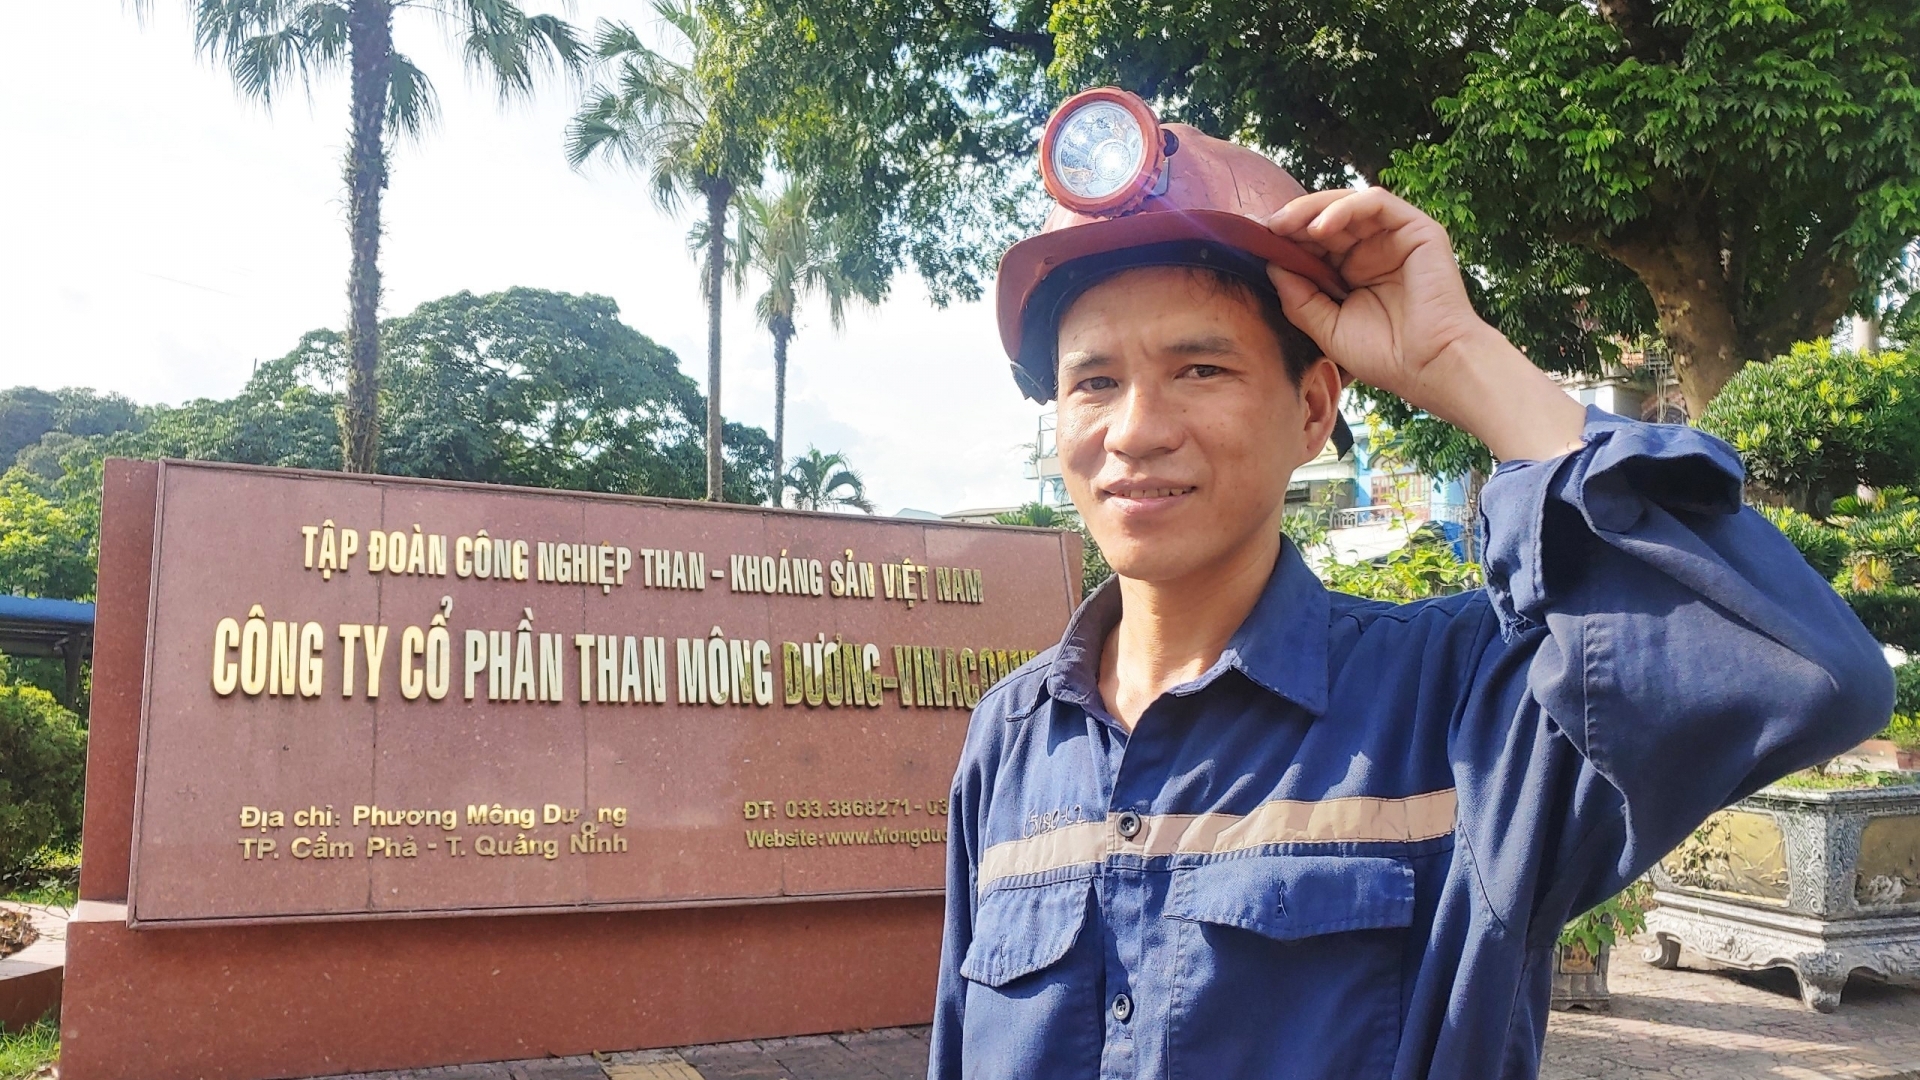 Đoàn viên Nguyễn Quang Chiến, người thợ lò tiêu biểu